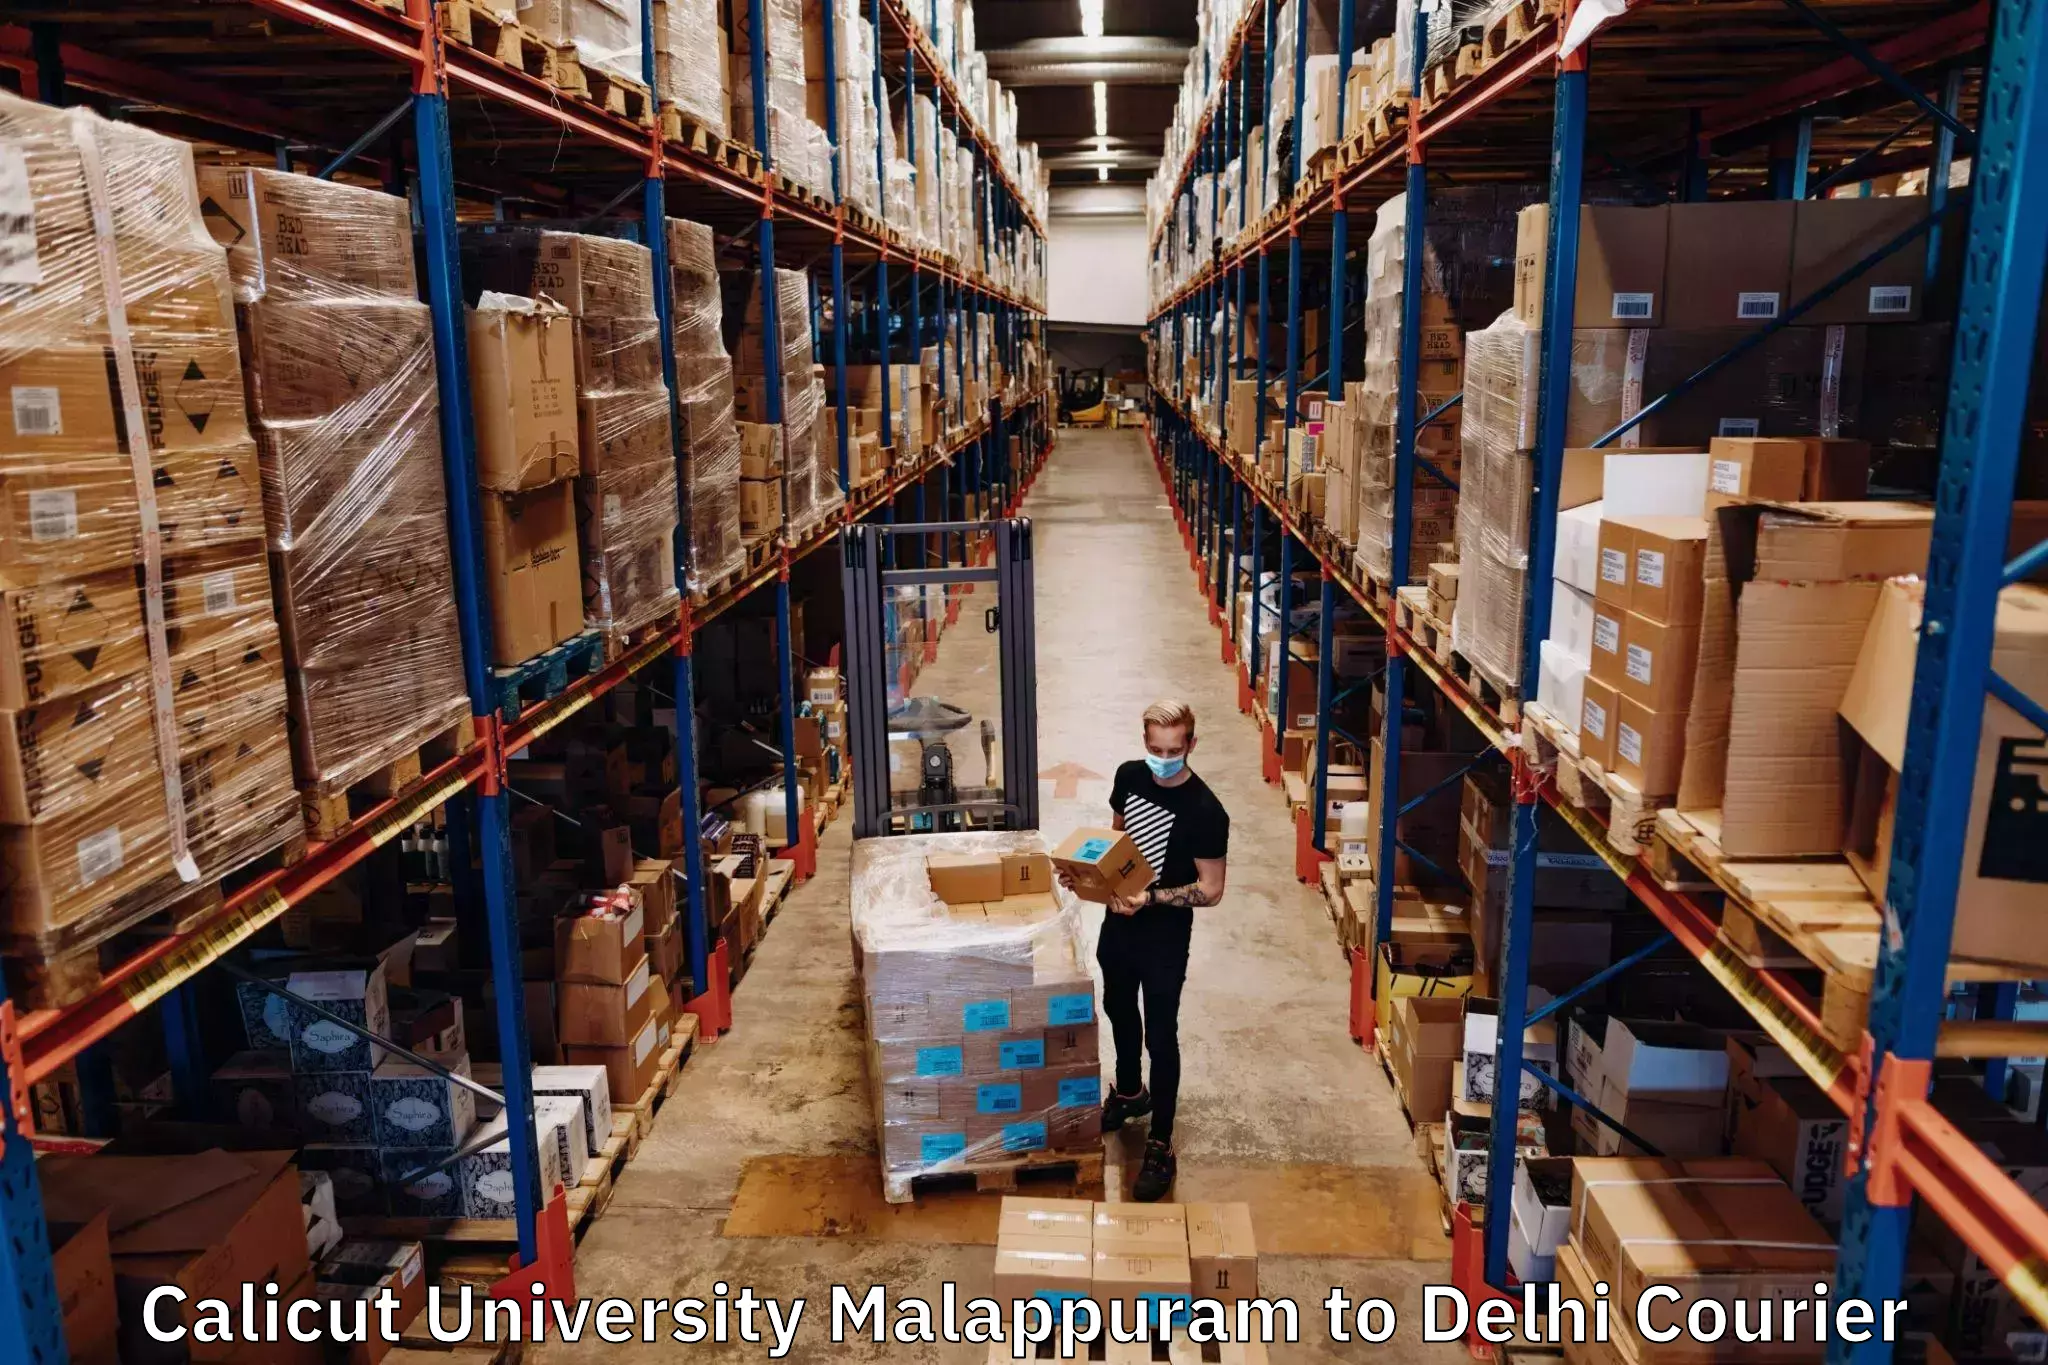 Digital courier platforms Calicut University Malappuram to Delhi